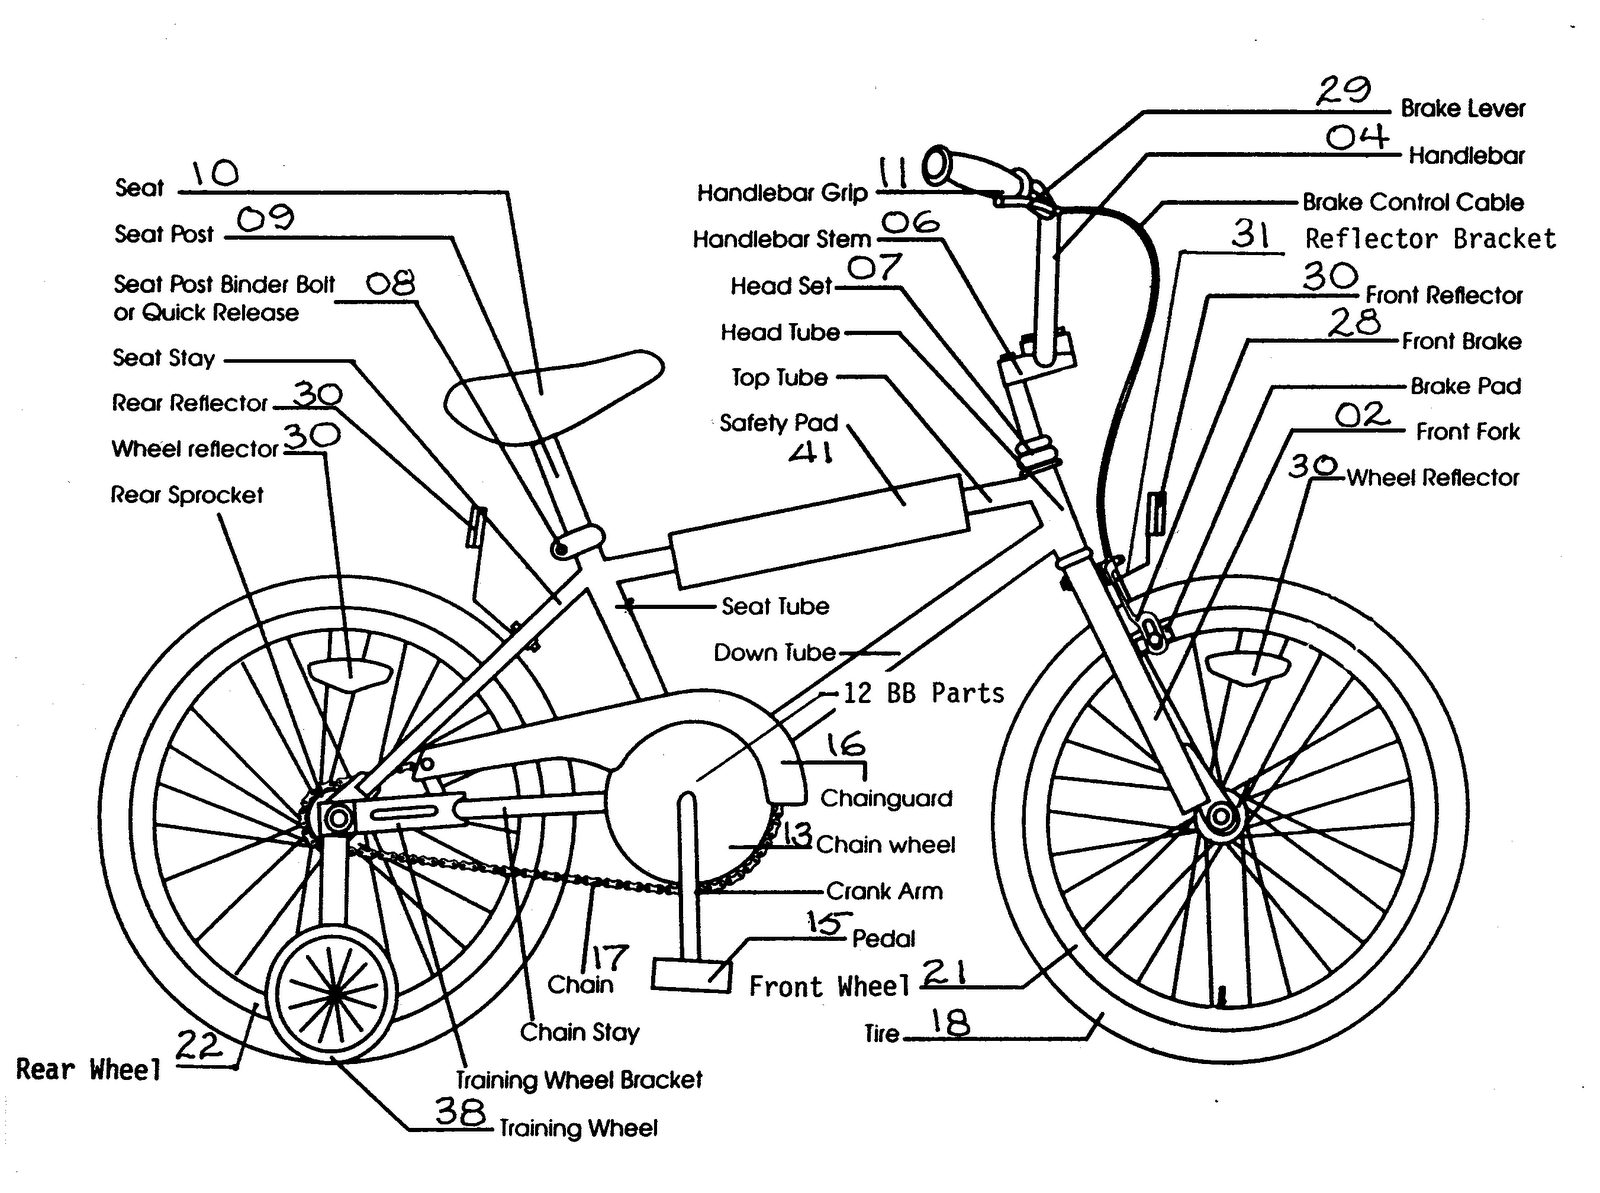 Схема сборки велосипеда. Схема велосипеда с названием деталей стелс. Схема каретки детского велосипеда. Строение шоссейного велосипеда. Устройство велосипеда схема для детей.